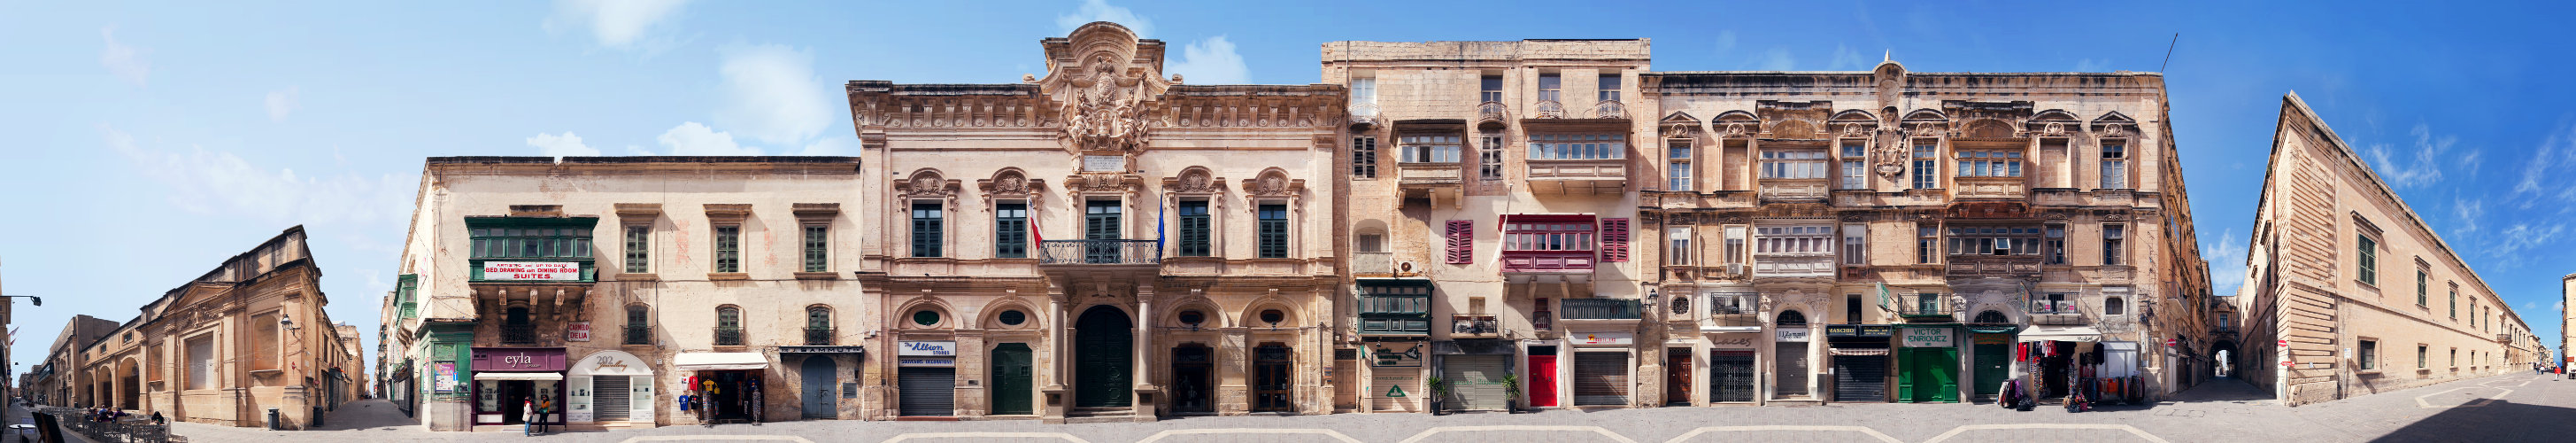 Valletta Malta image